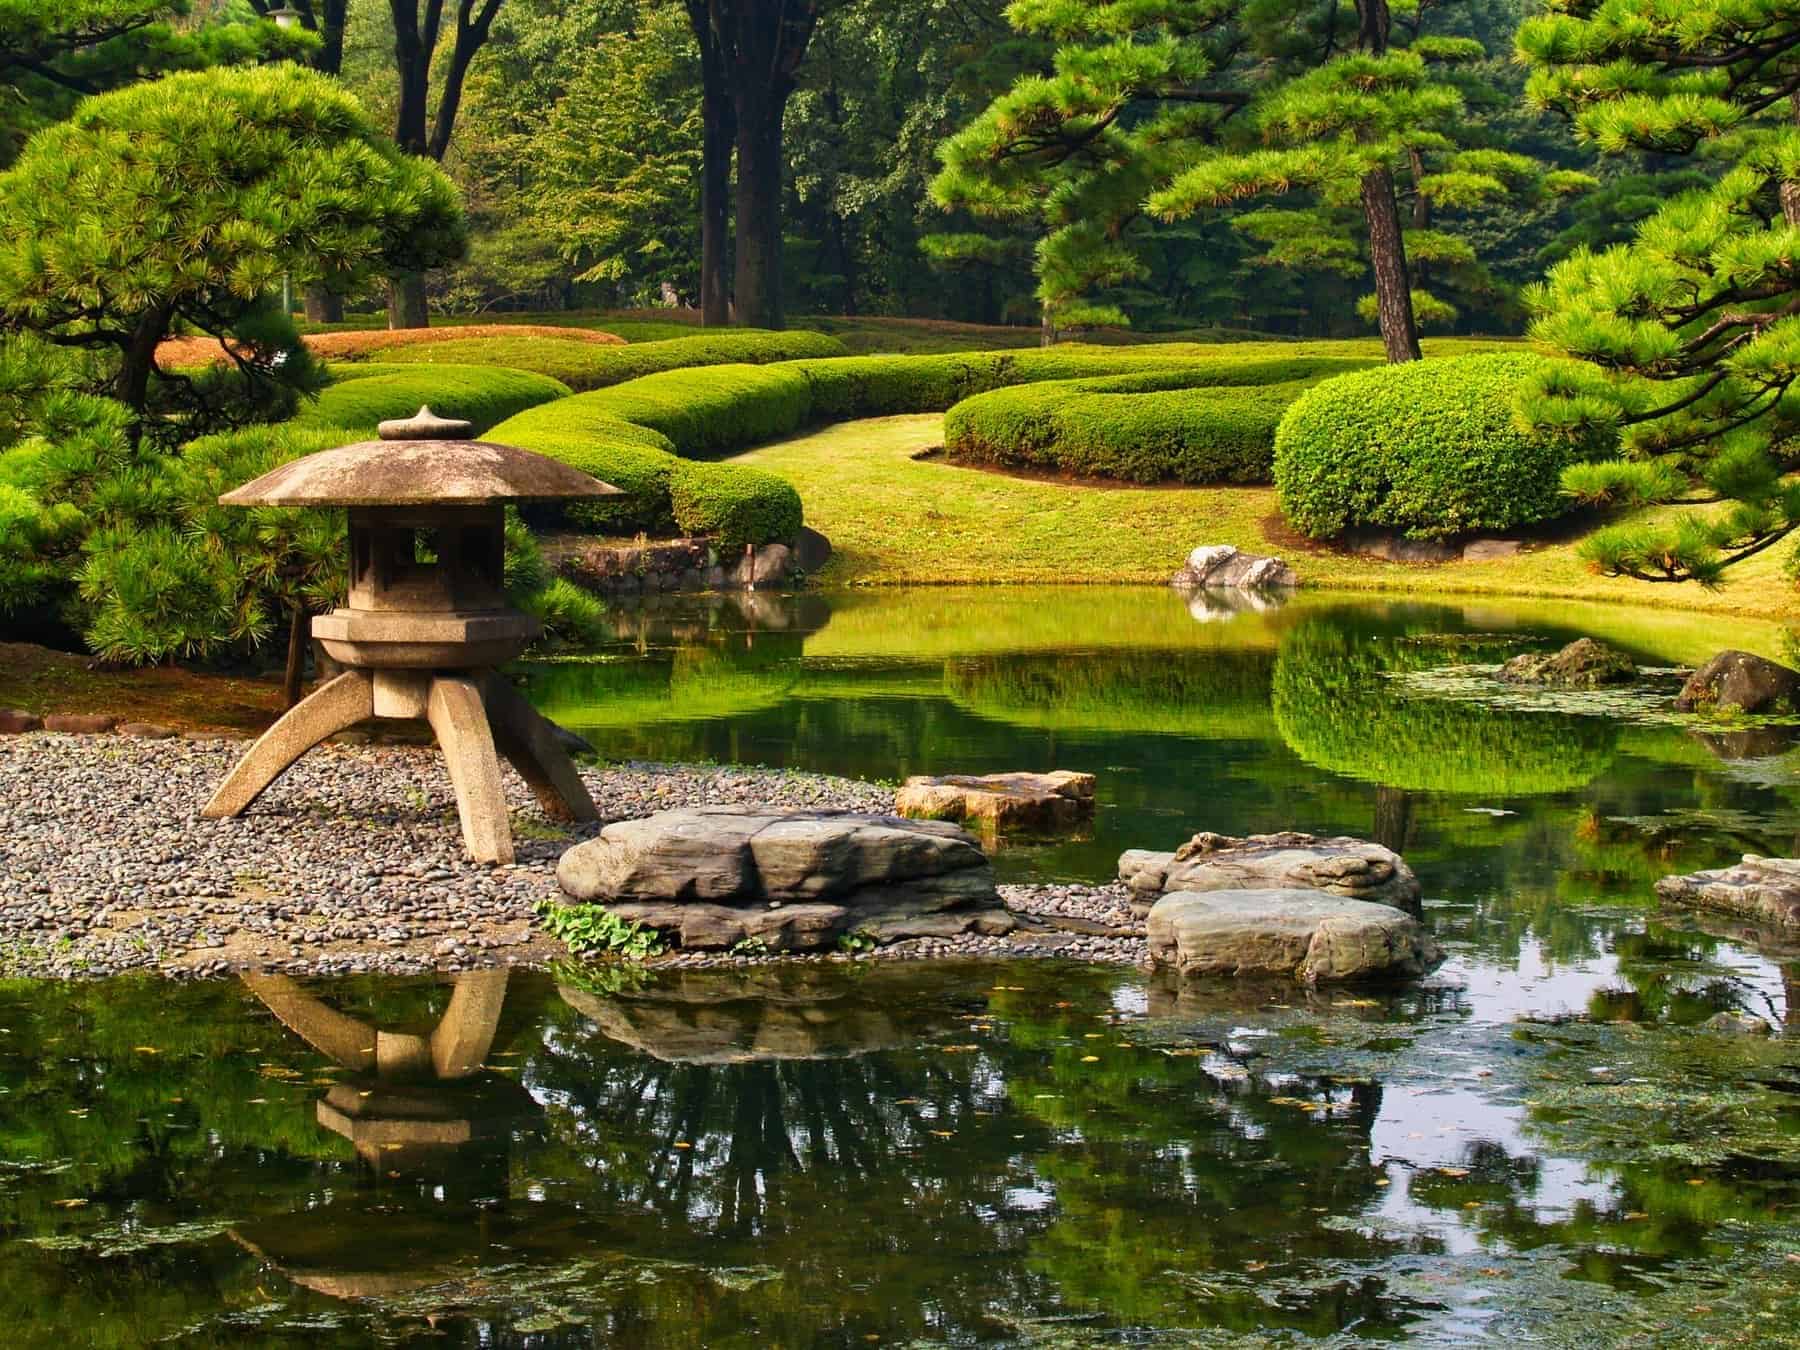 Traditionelle japanske formelle haver, herunder vandfunktion, skulpturelle træer og hække, Imperial Palace Gardens, Kōkyo Higashi-gyoen, Tokyo, Japan.